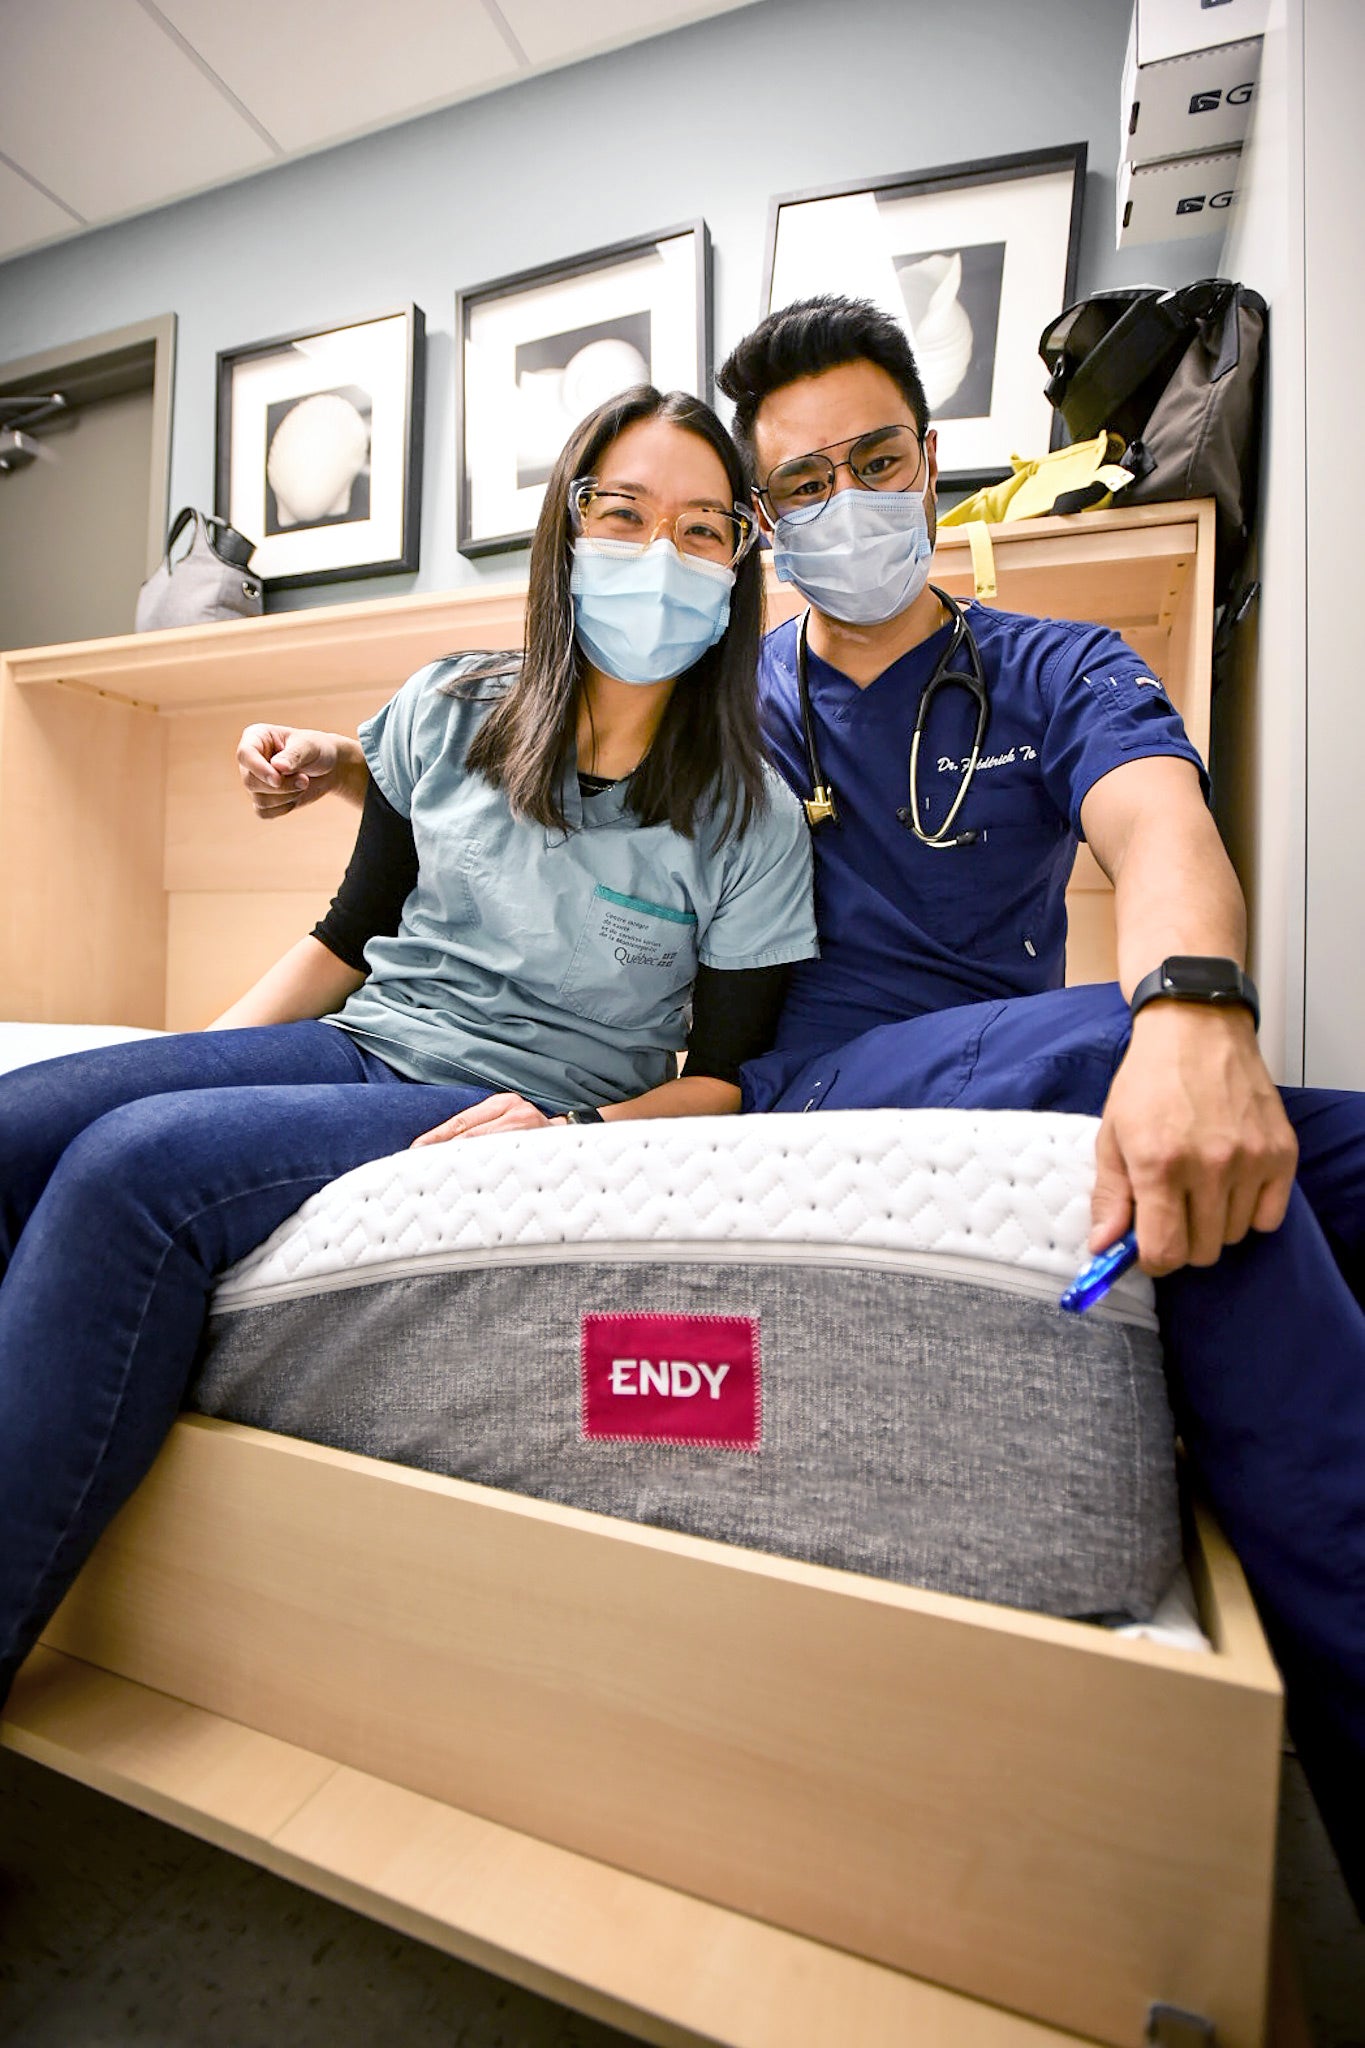 Deux travailleurs de la santé de l'hôpital Pierre Boucher sont assis sur un matelas Endy nouvellement livré.